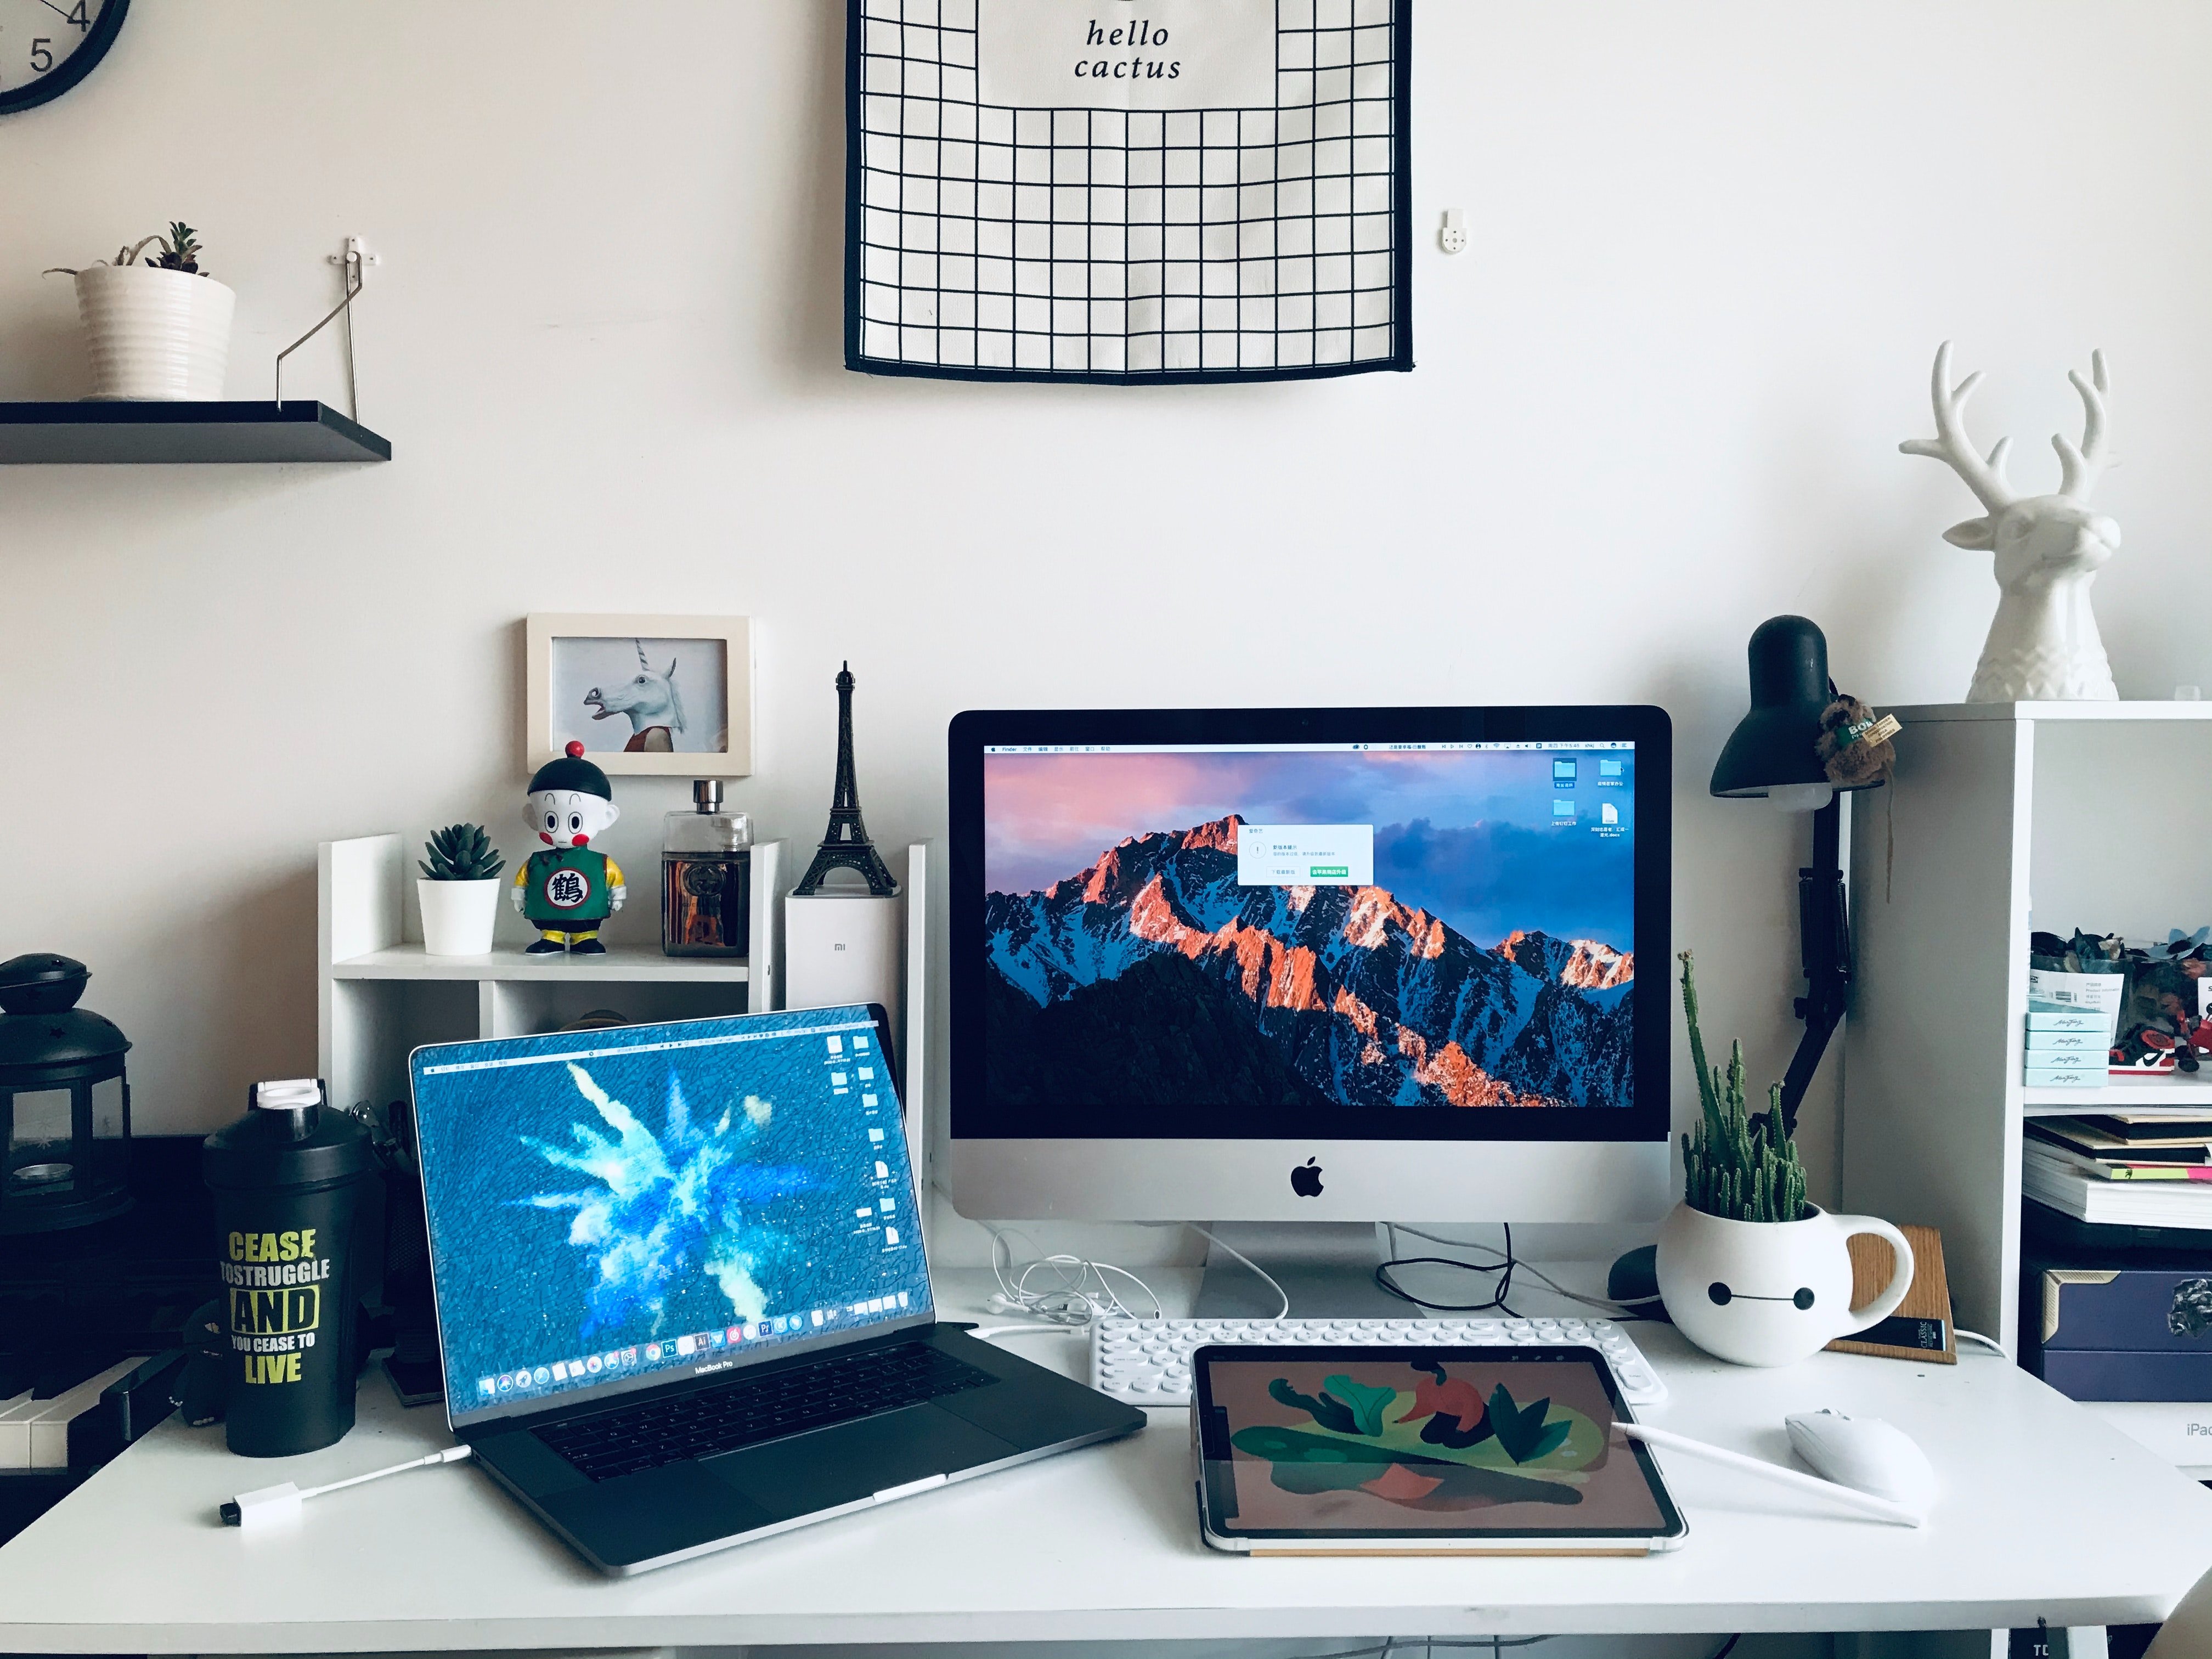 Büro-Setup mit einem PC-Bildschirm, einem Laptop und kleinen Regalen mit Deko und Pflanzen.